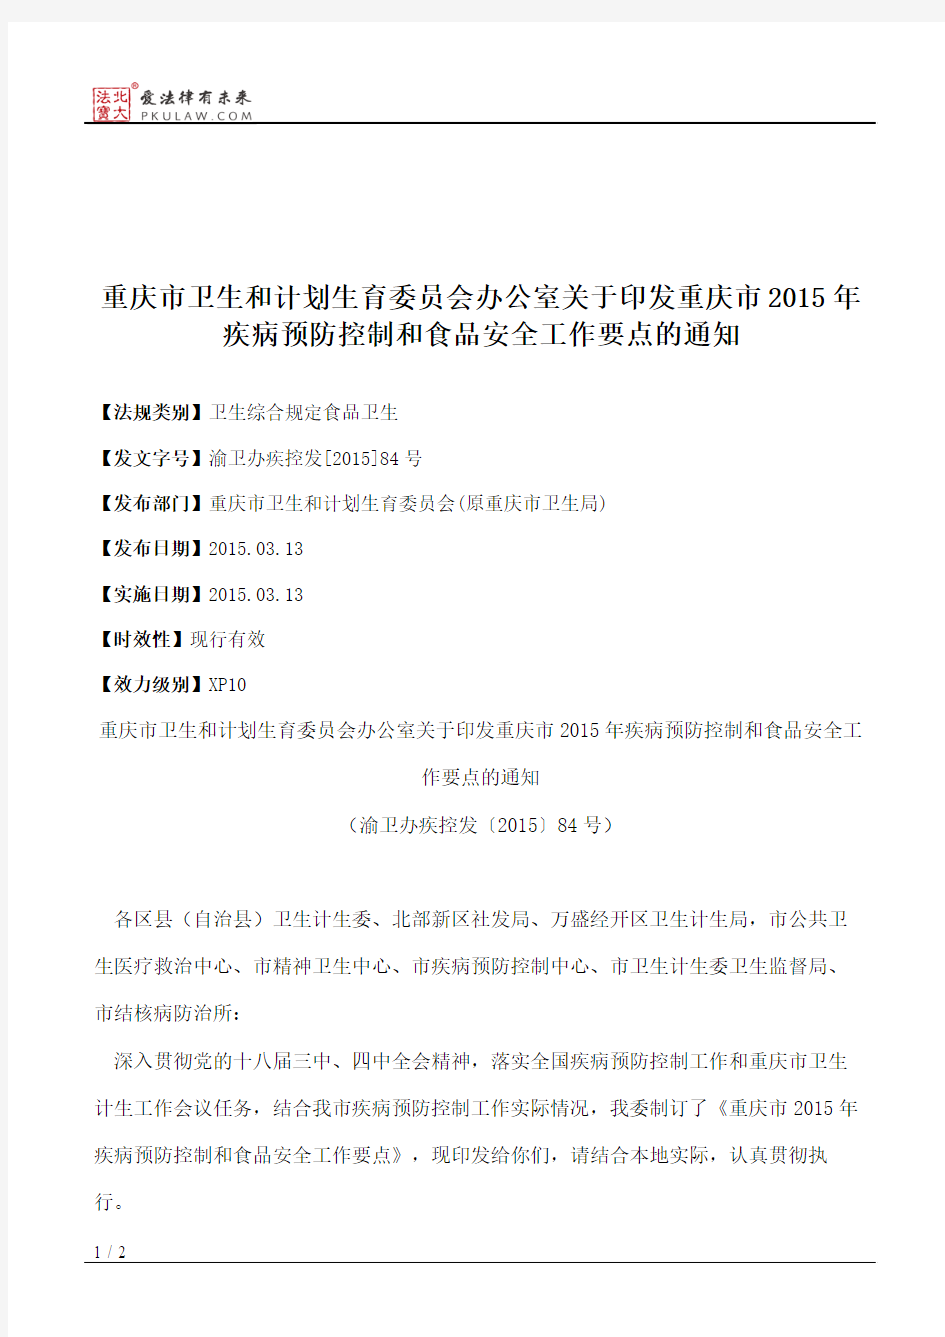 重庆市卫生和计划生育委员会办公室关于印发重庆市2015年疾病预防